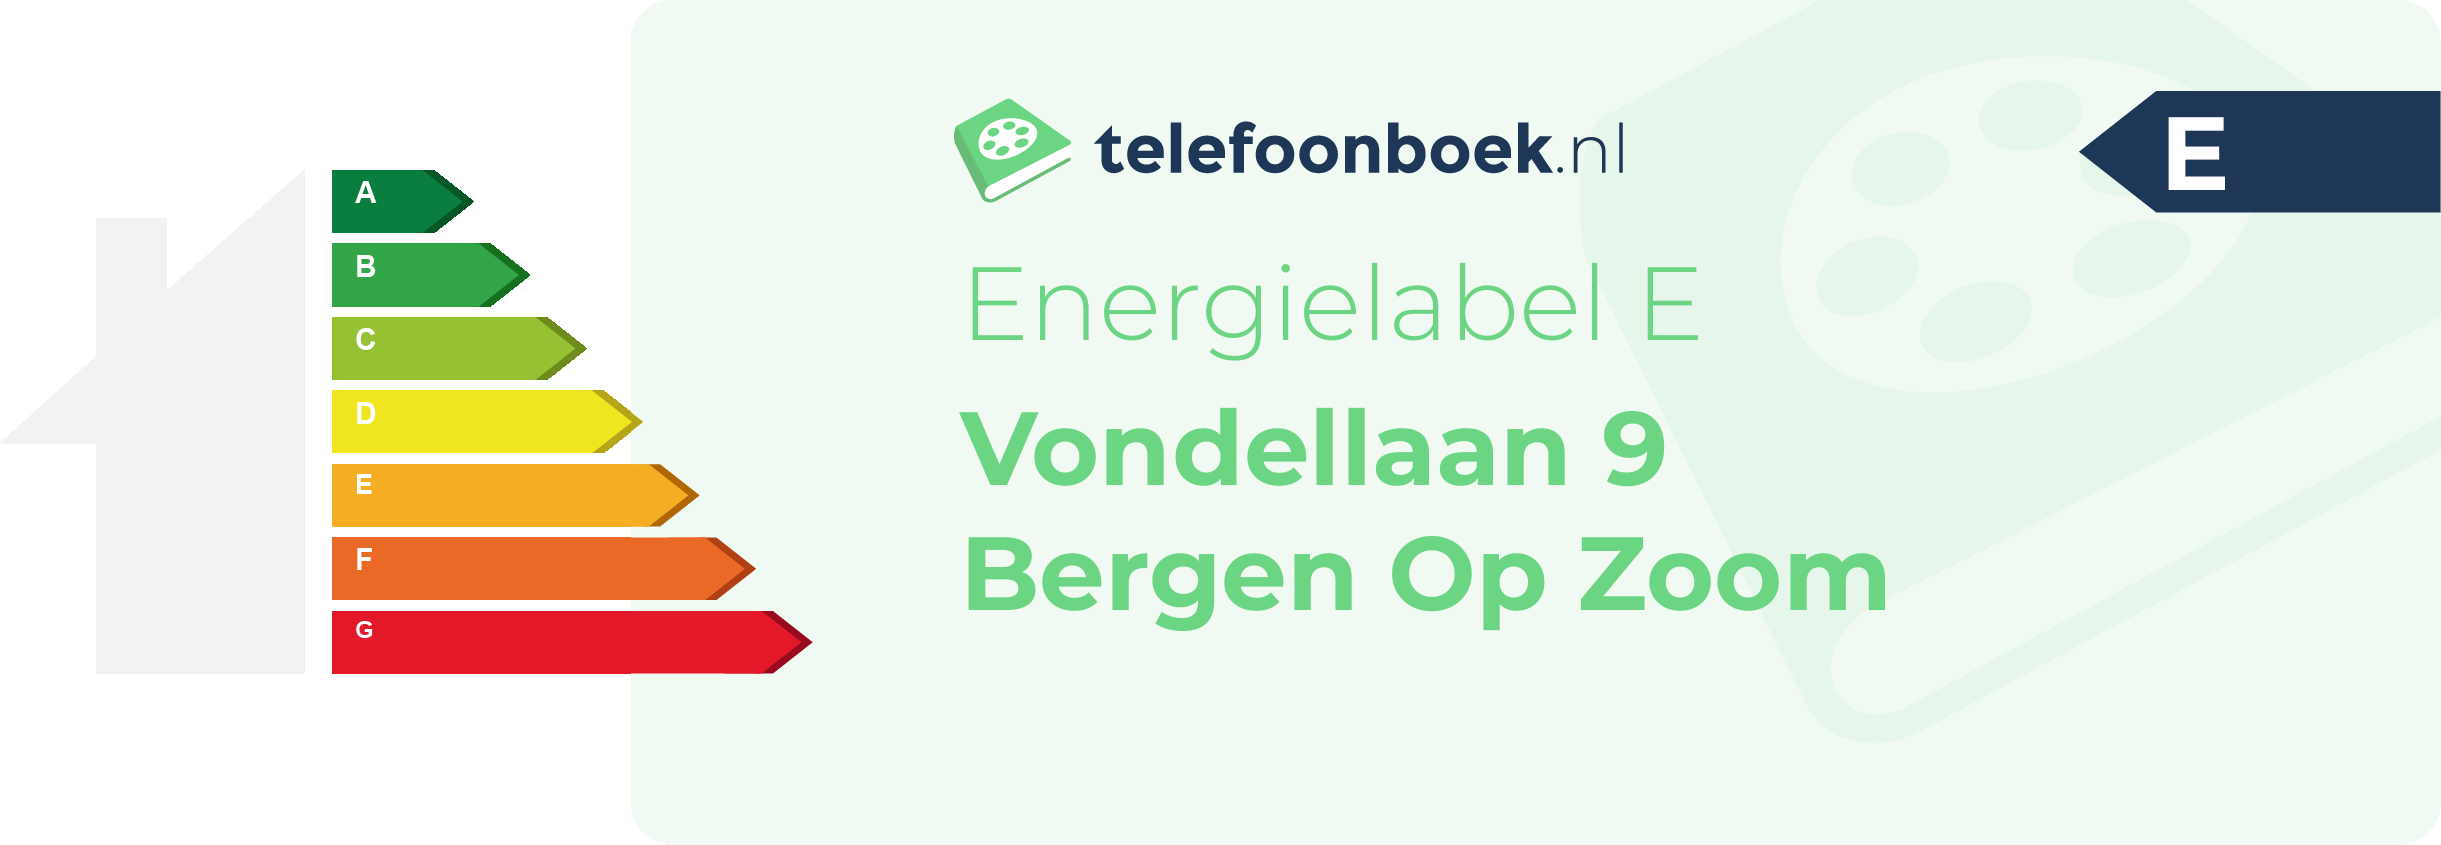 Energielabel Vondellaan 9 Bergen Op Zoom